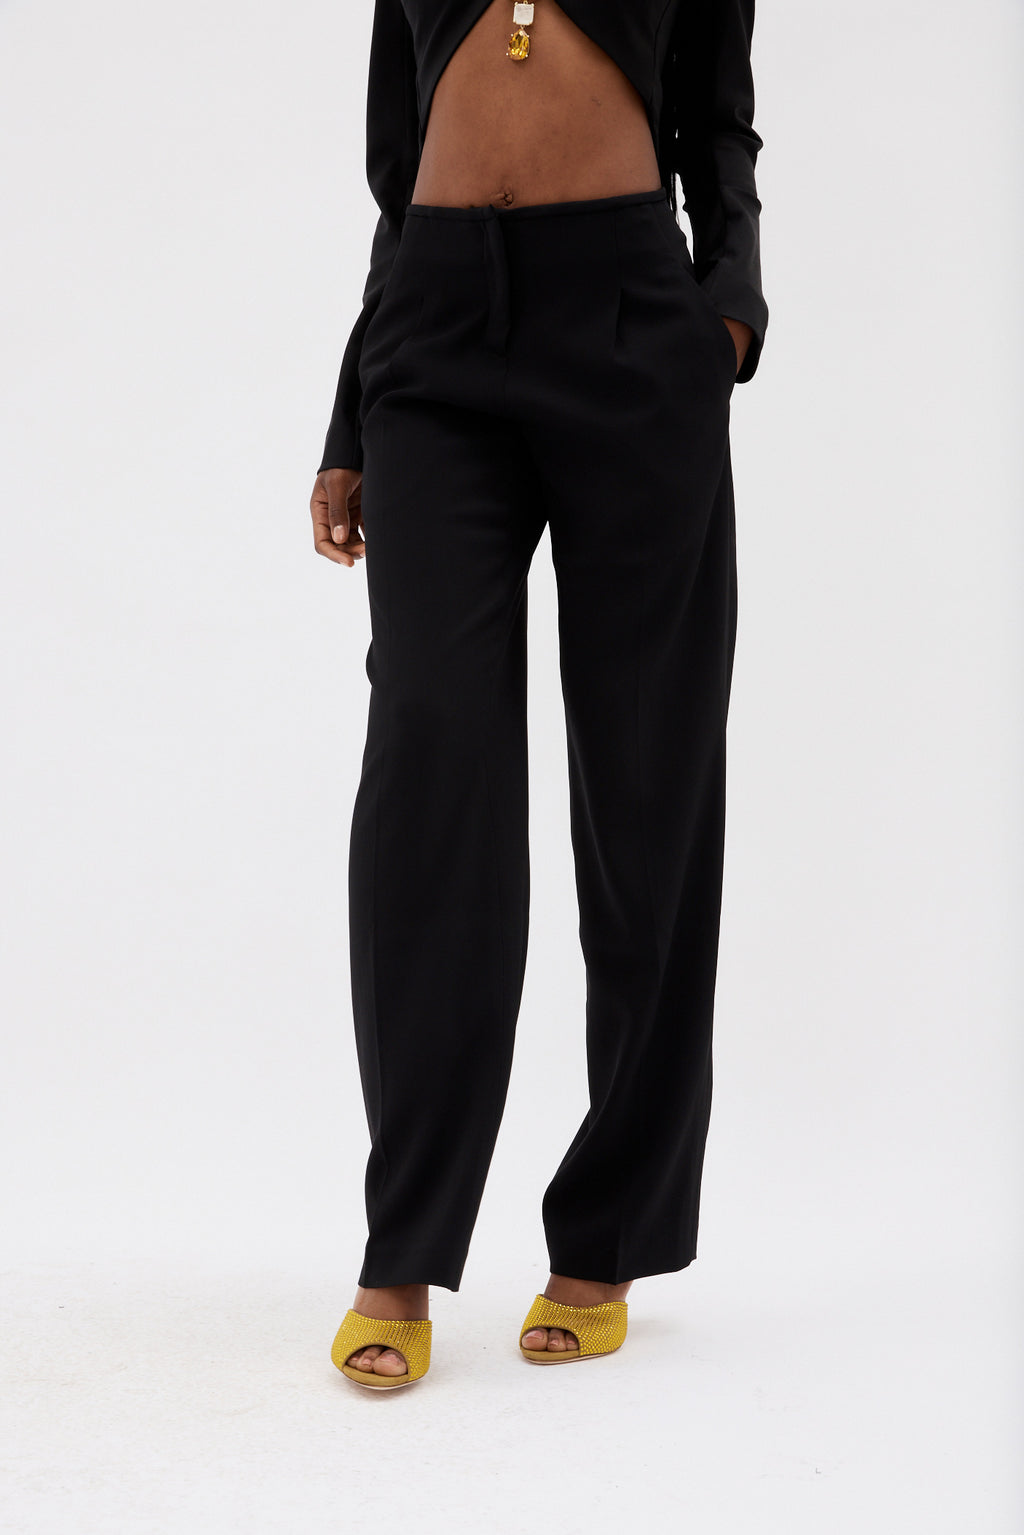 Dion Lee Low Rise Black Pocket Trouser – Désordre Boutique